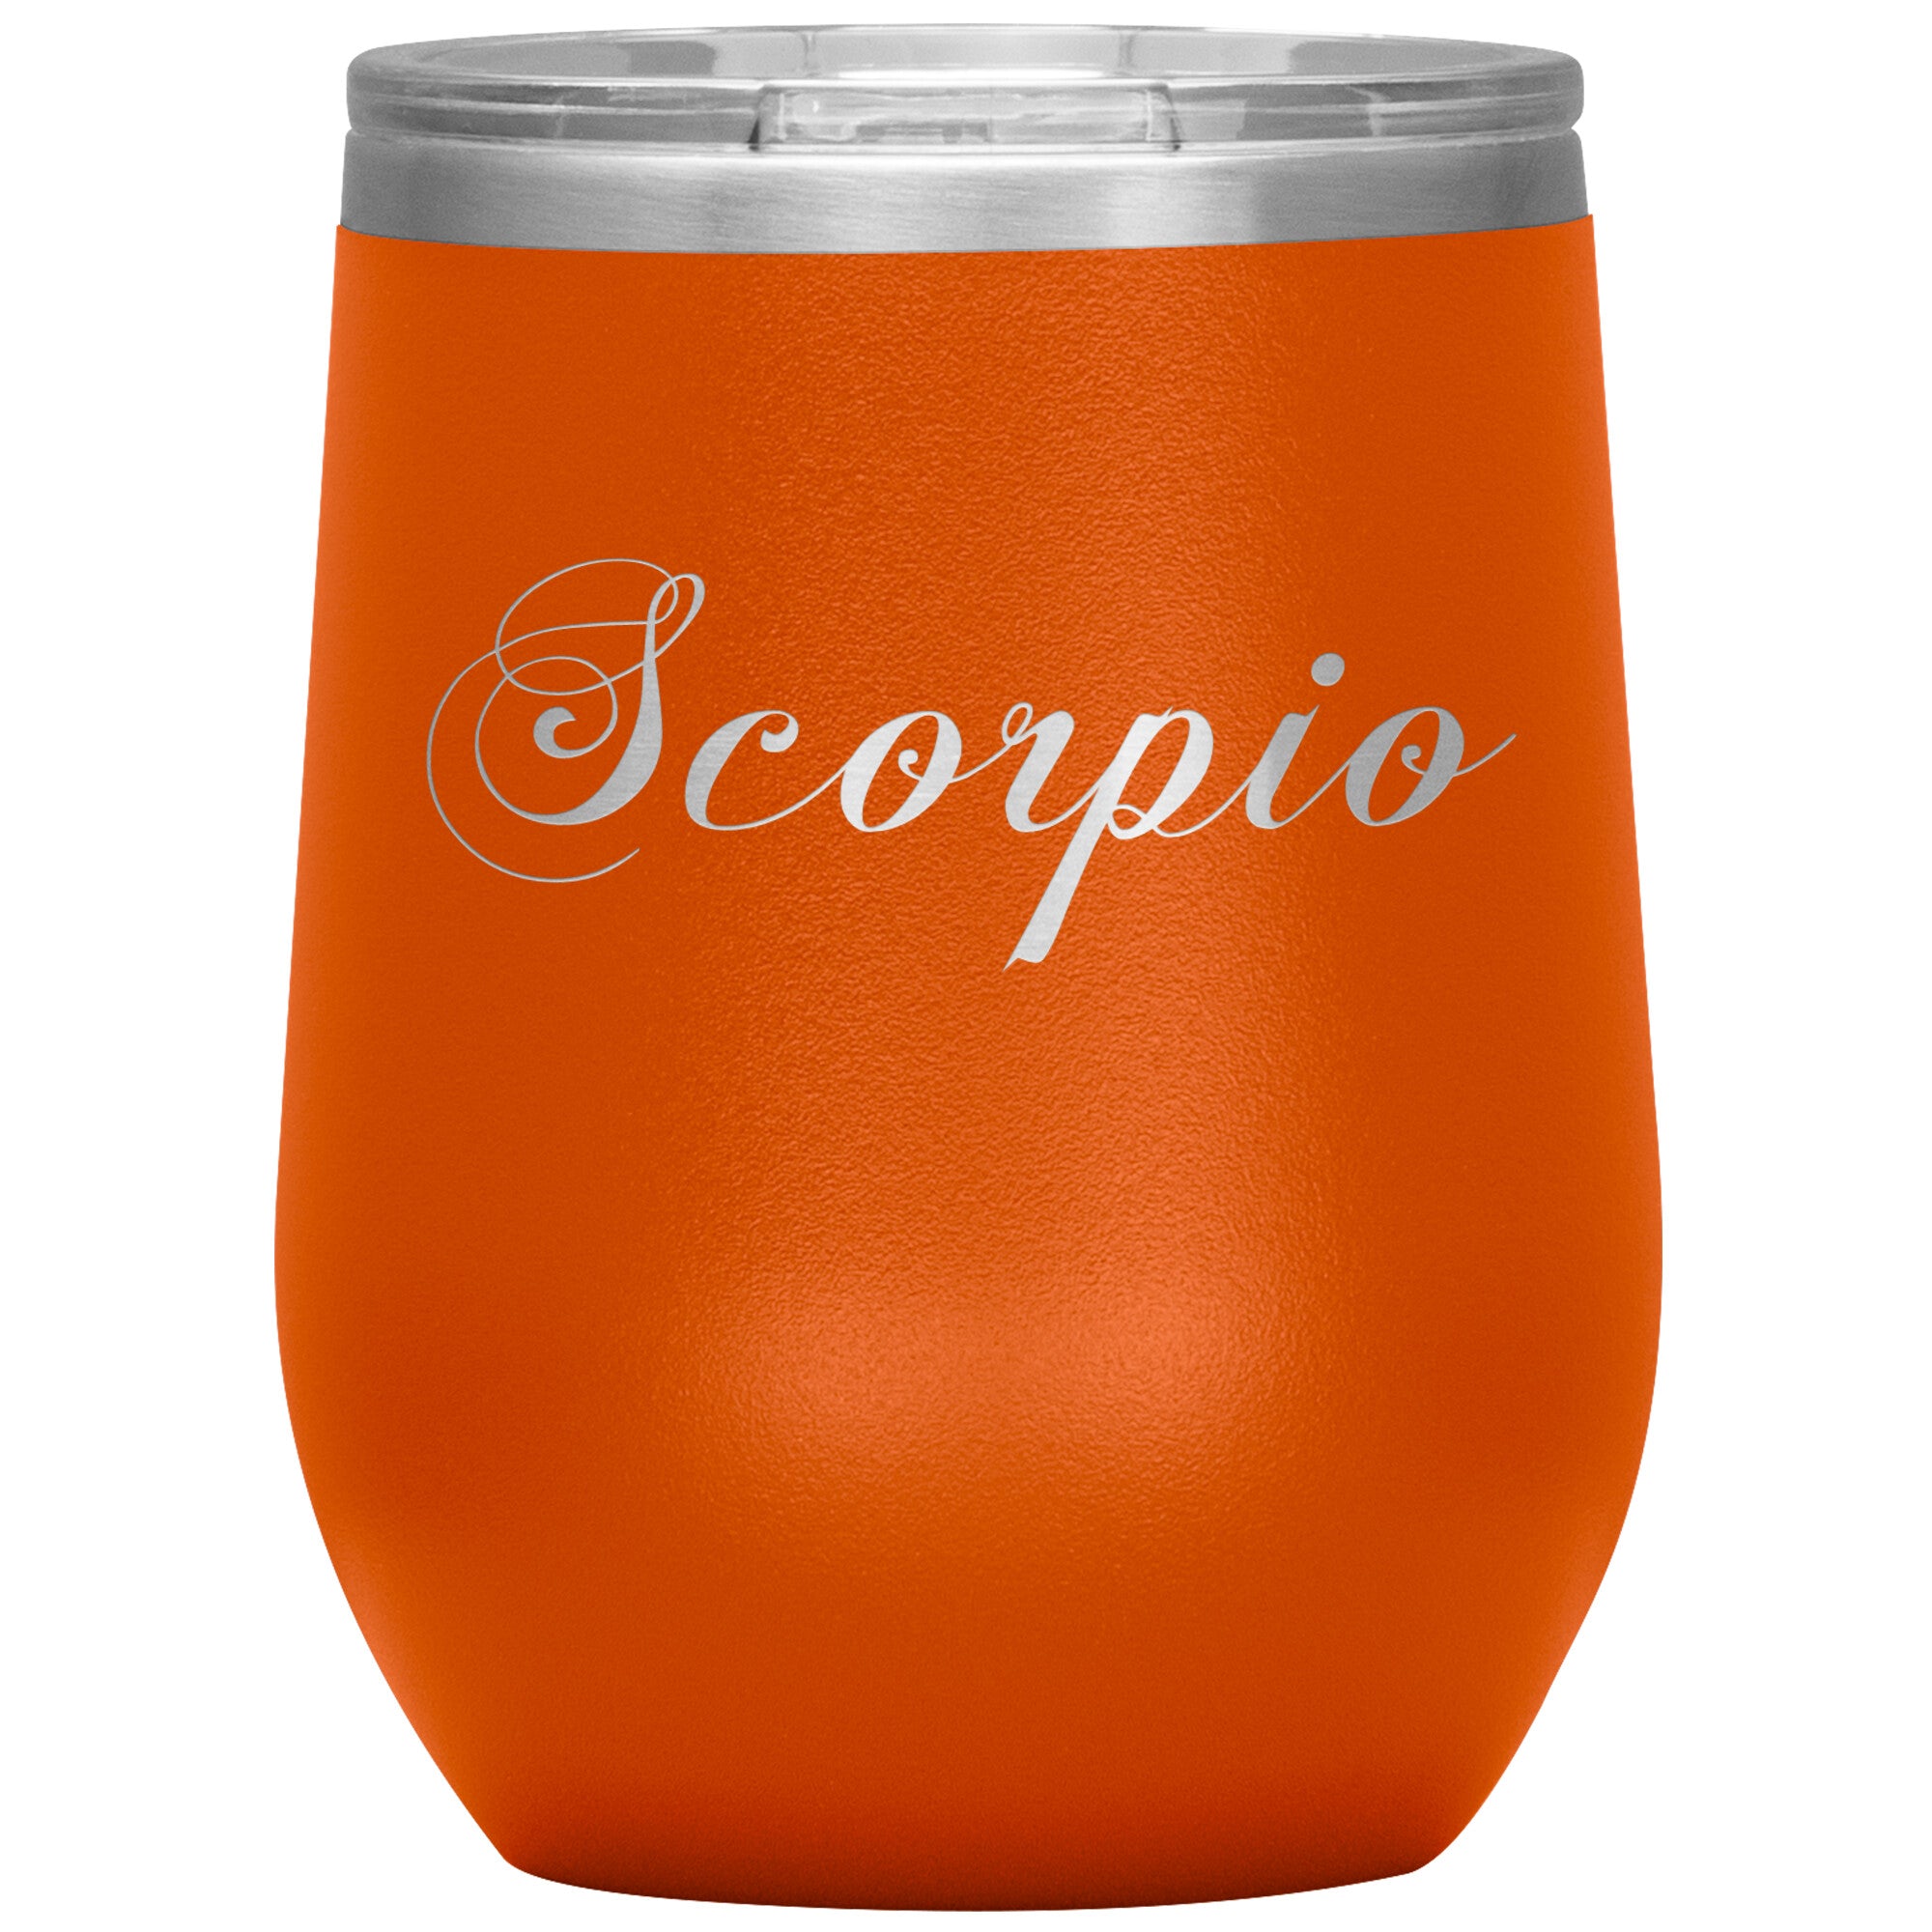 Scorpio Zodiac Wine Tumbler - Edy's Treasures